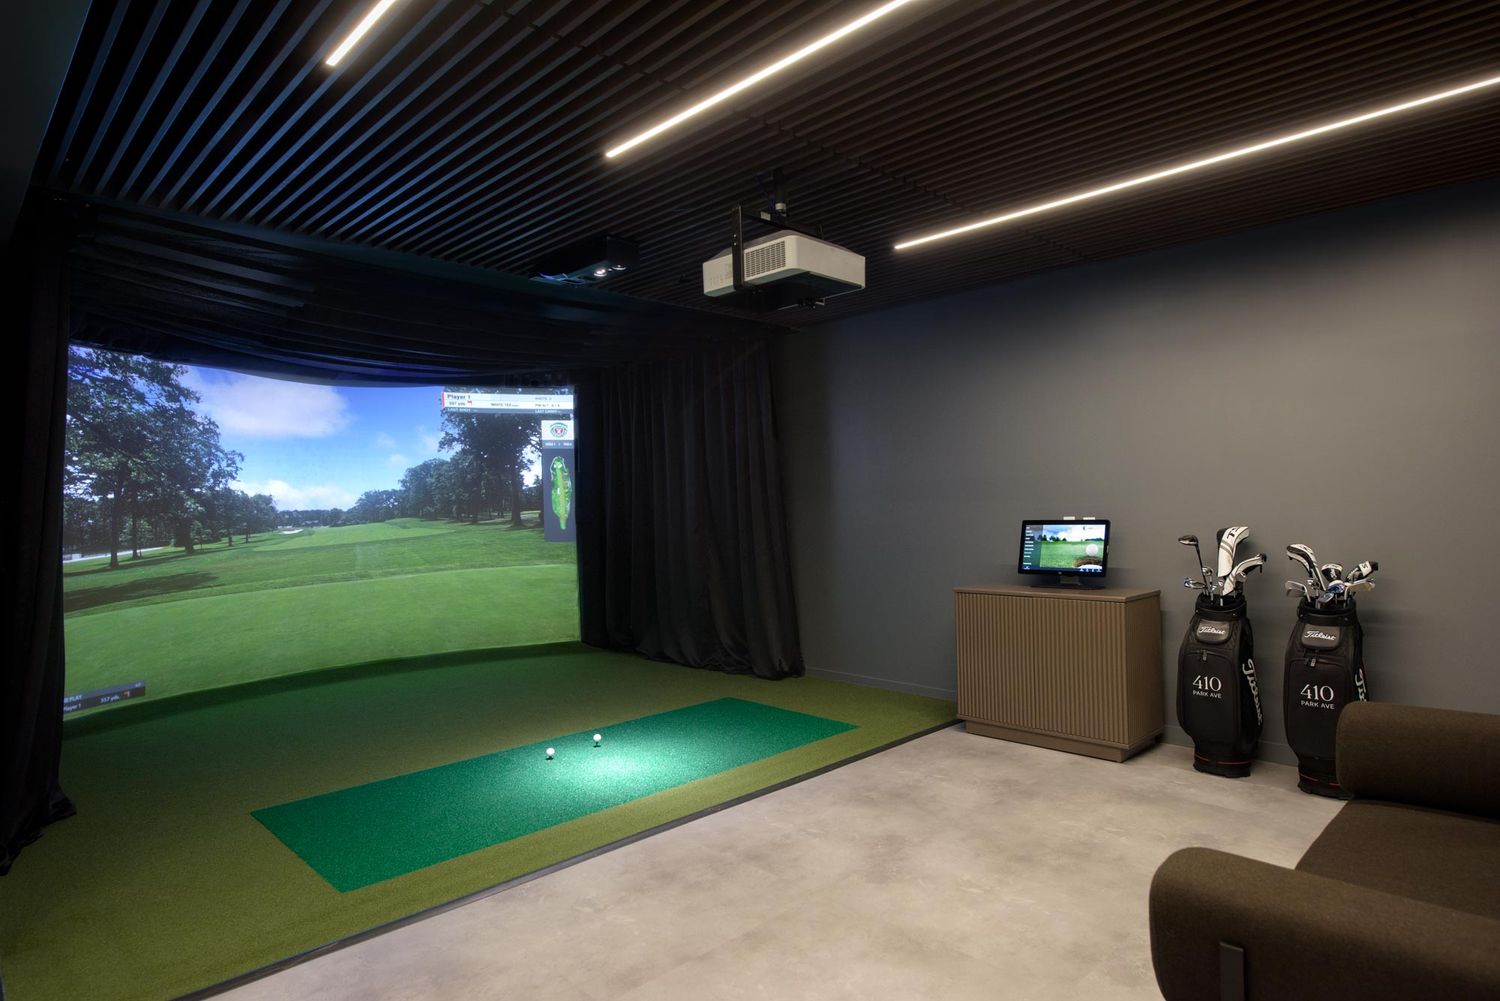 410 Park Avenue’s indoor golf simulator